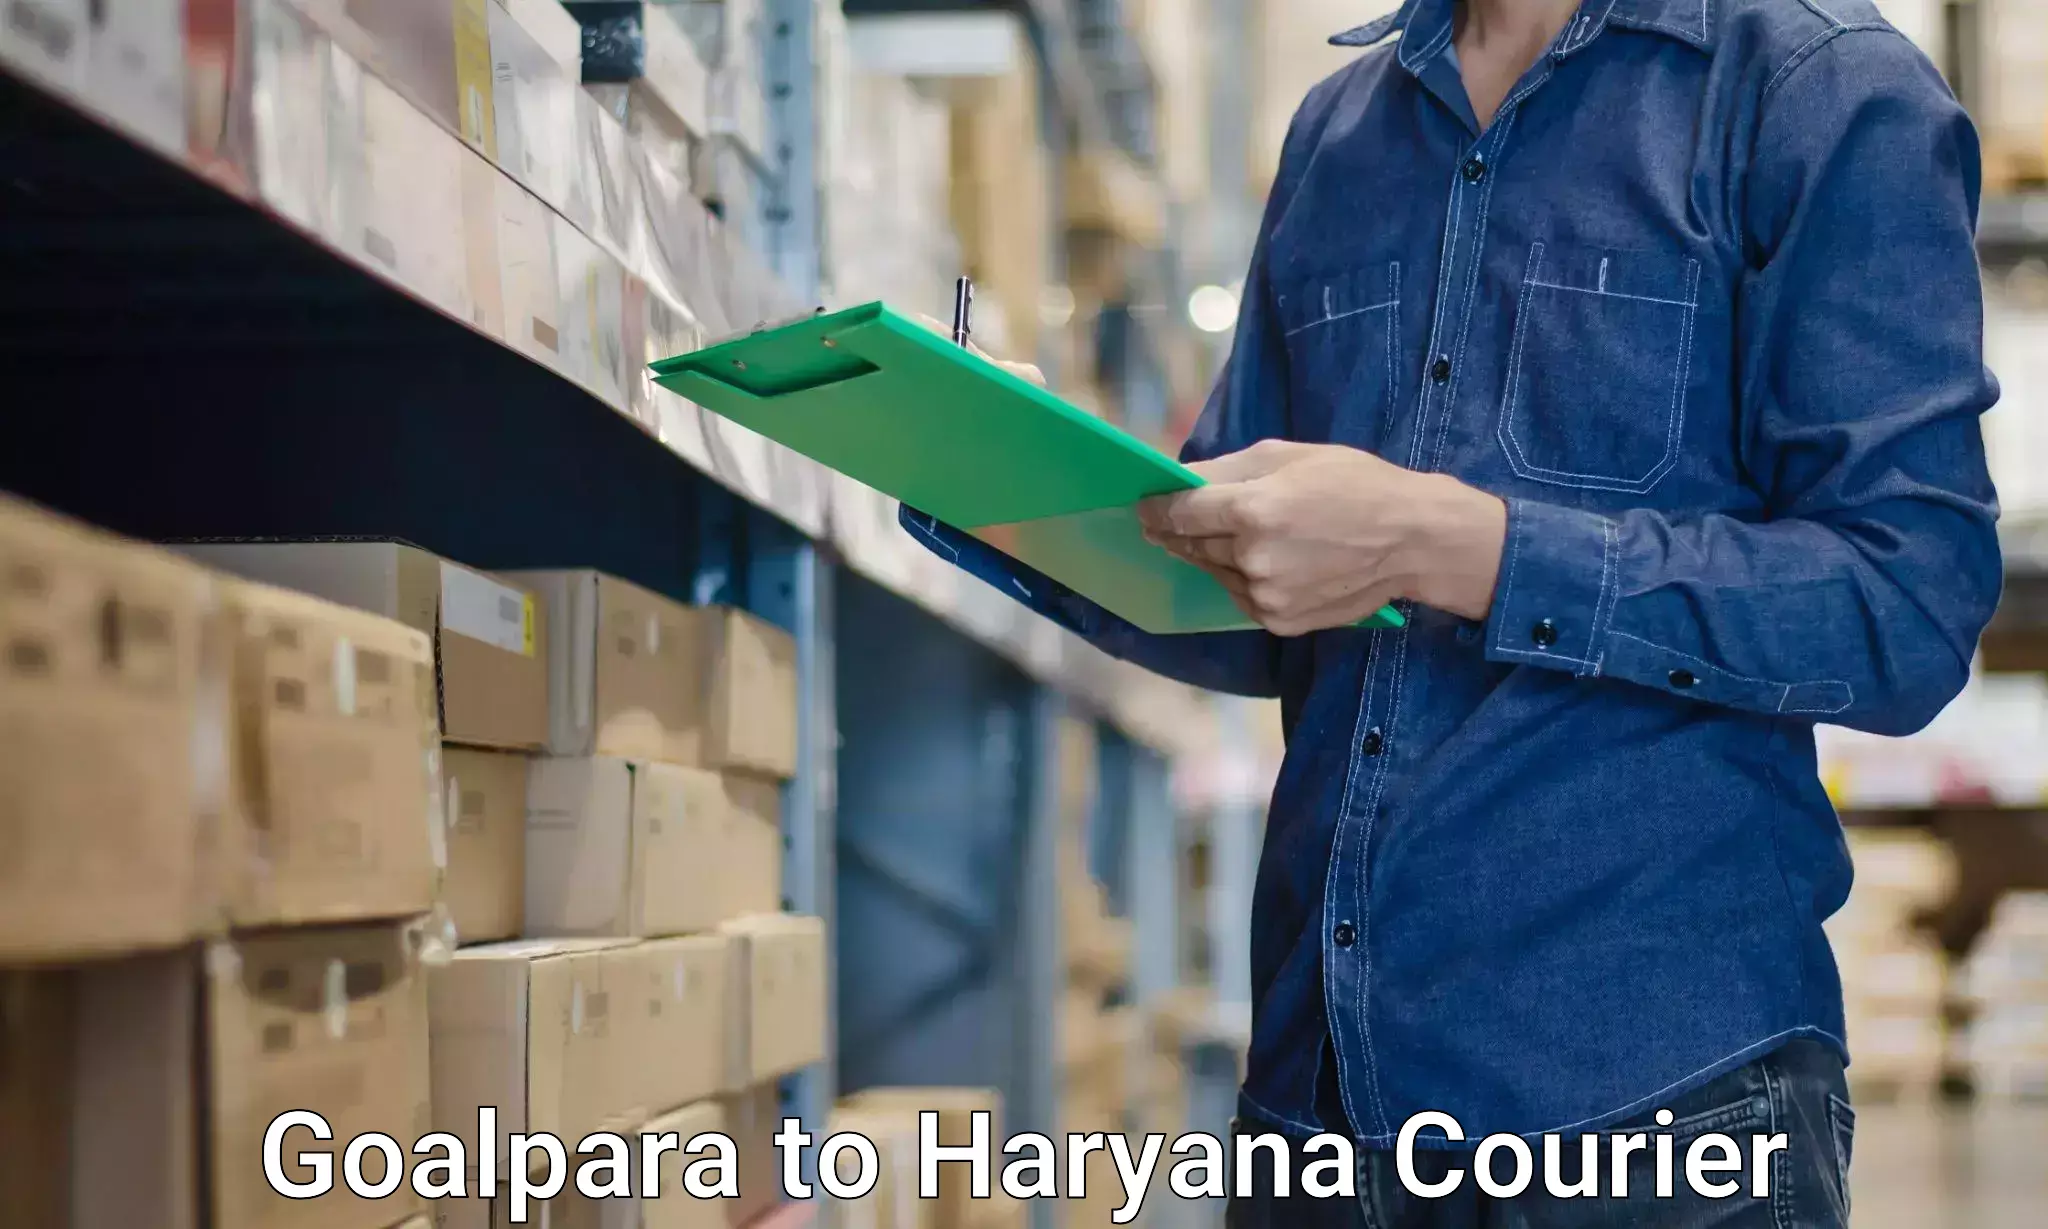 Furniture logistics Goalpara to NCR Haryana